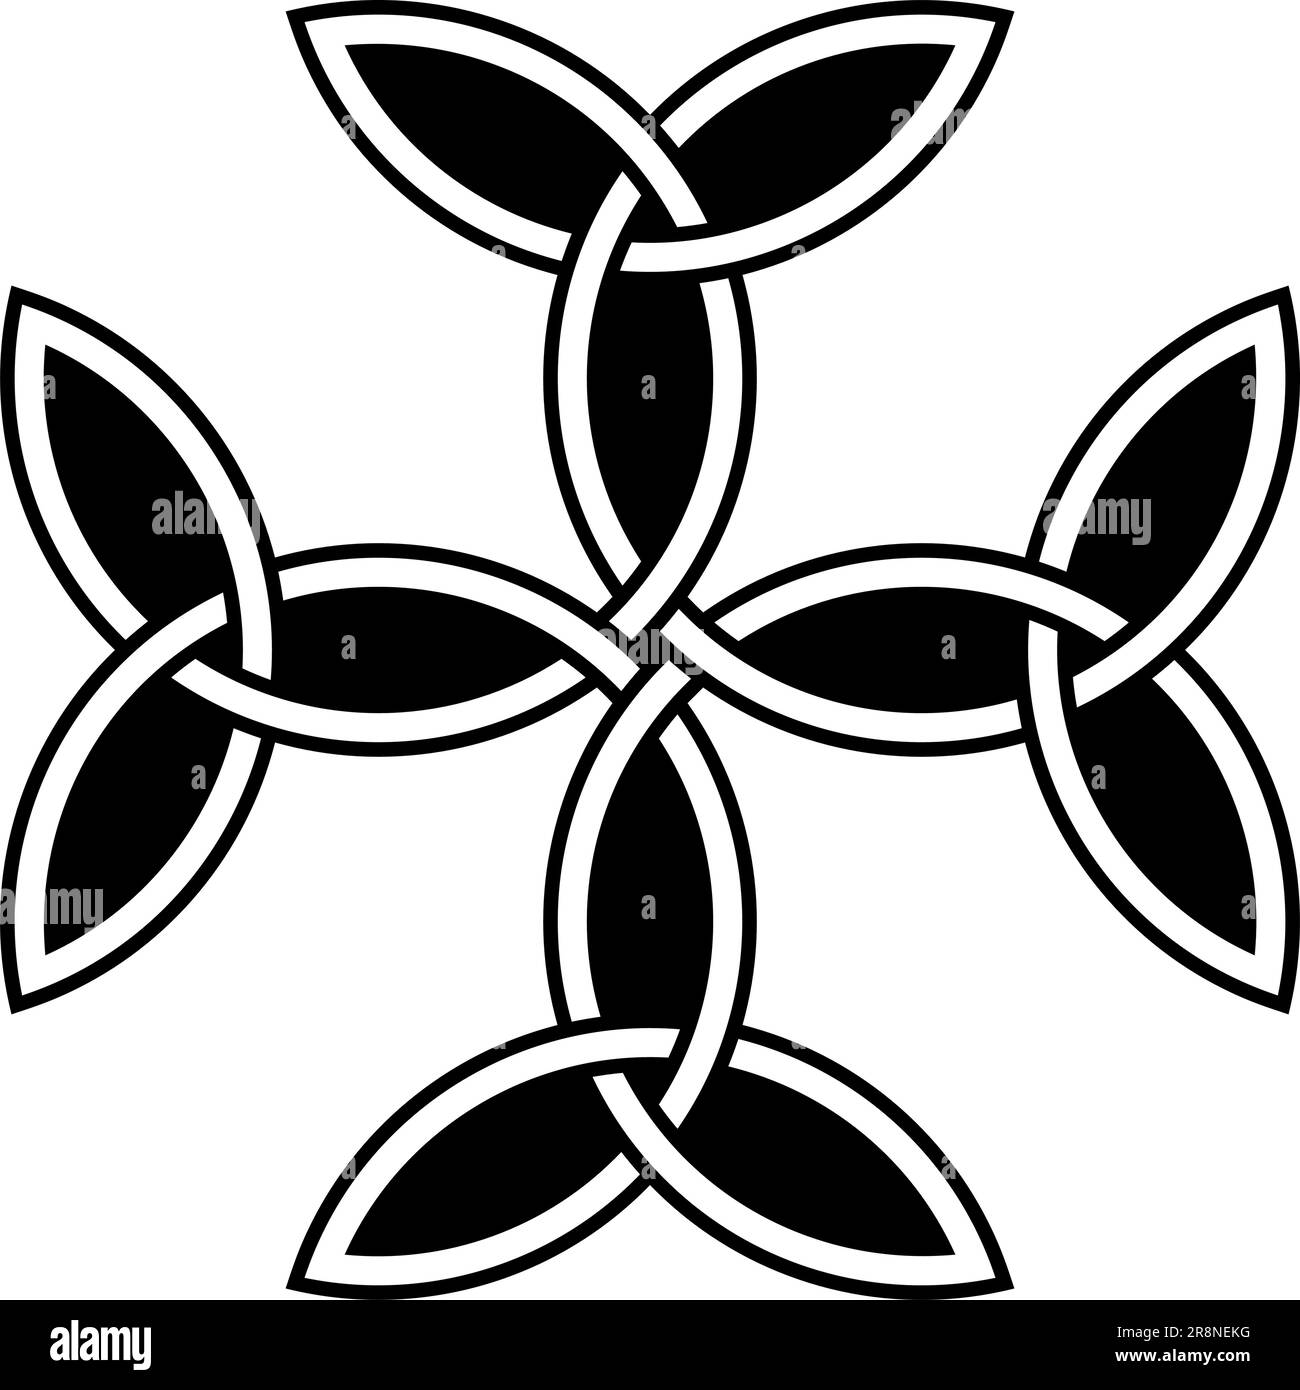 Croce Carolingiana con contorno nero. Sfondo isolato. Simboleggia l'unità, l'equilibrio e Dio. Illustrazione Vettoriale